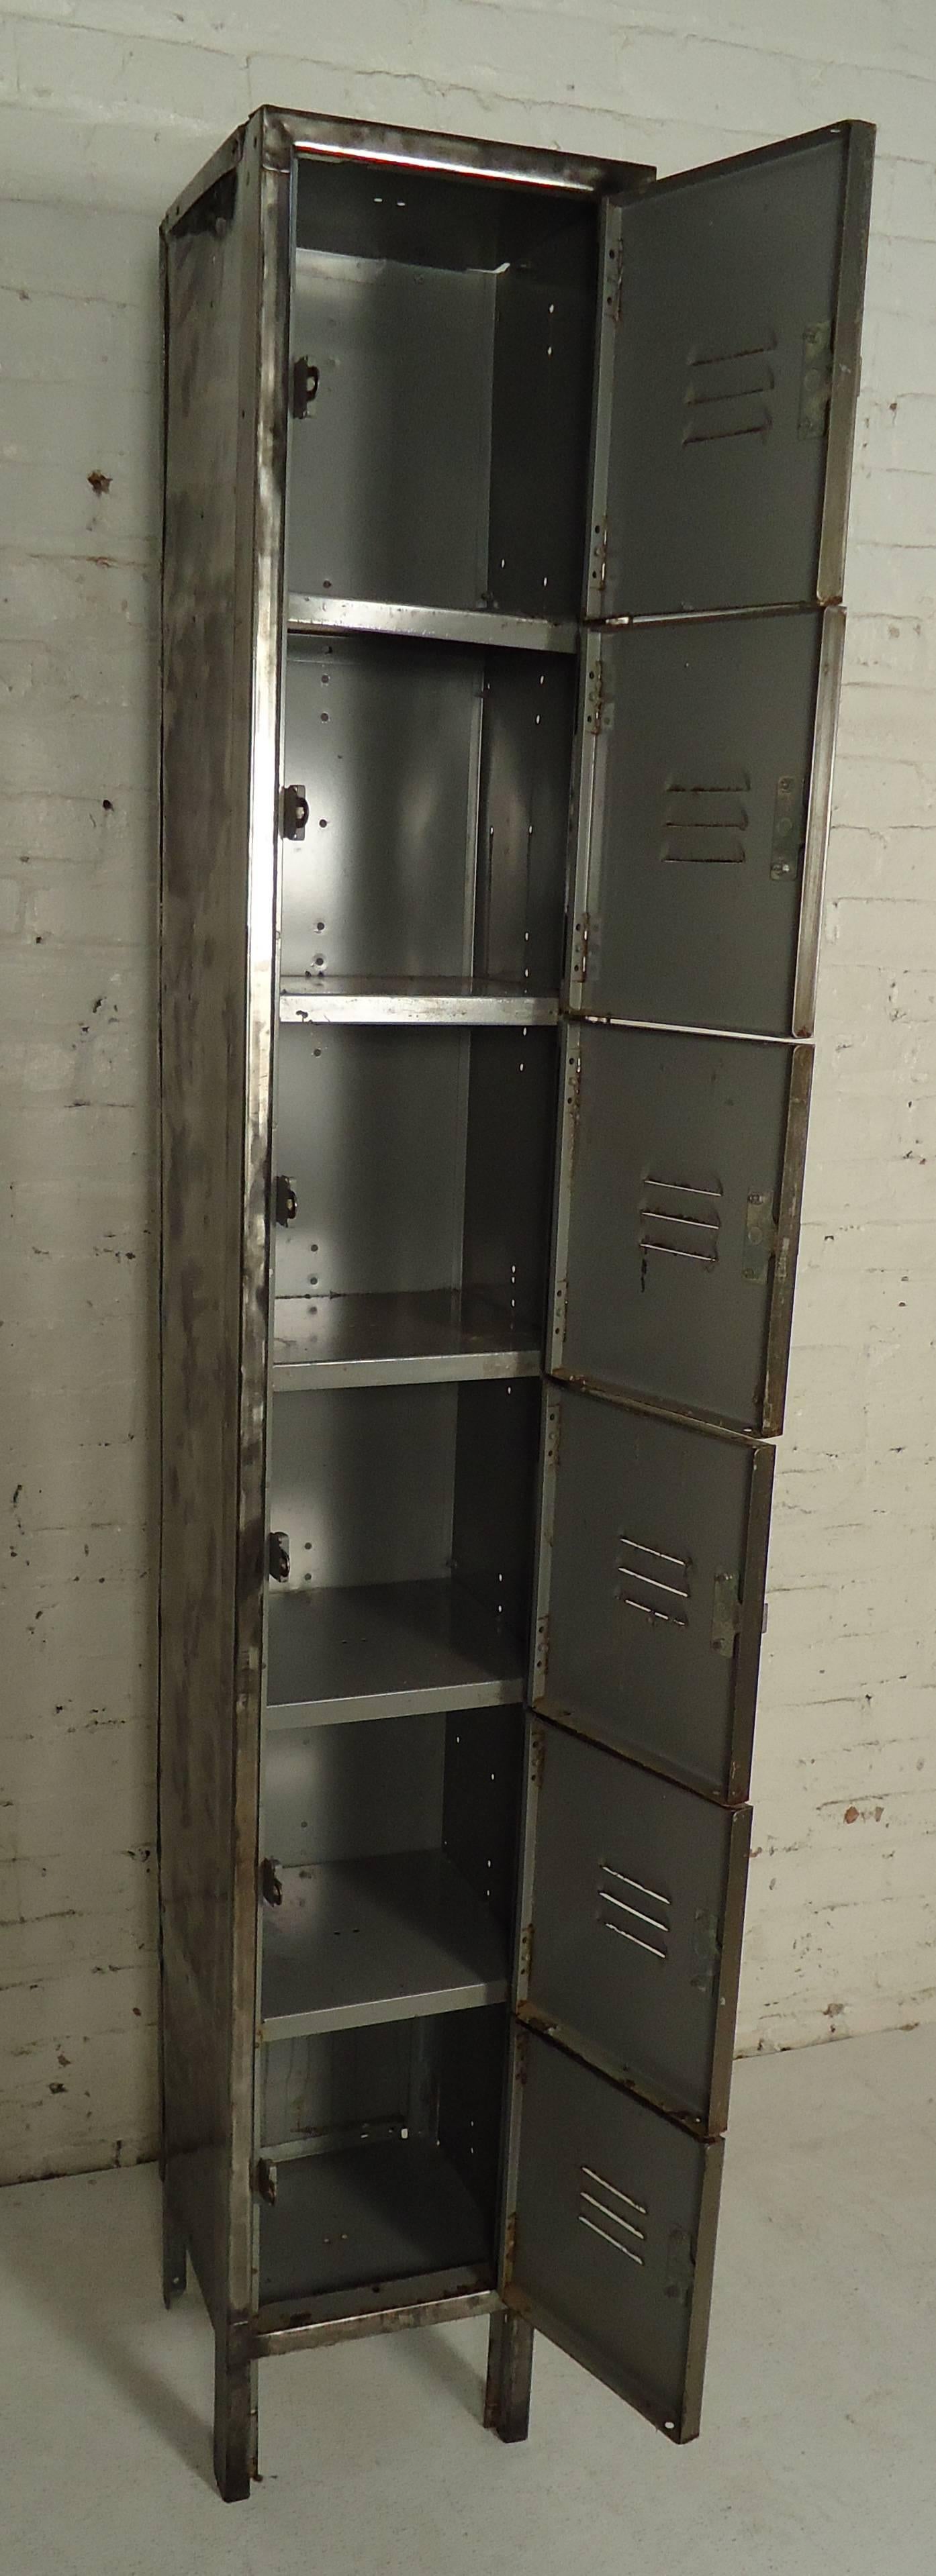 Restored Metal Locker Unit 1